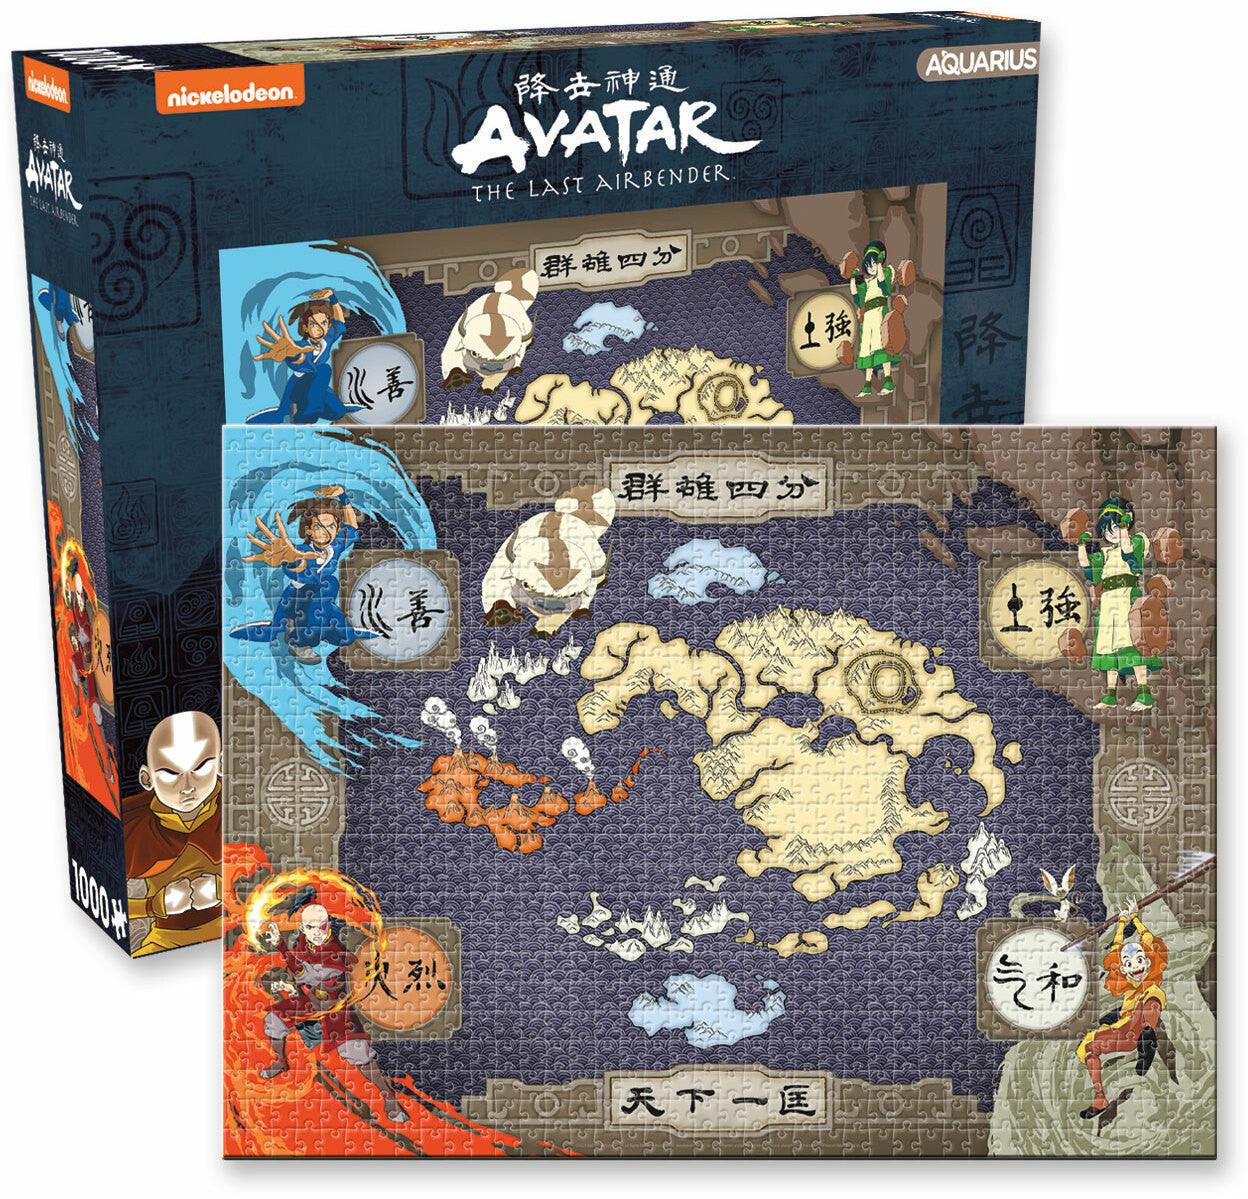 VR-92660 Aquarius Puzzle Avatar the Last Airbender Map Puzzle 1,000 pieces - Aquarius - Titan Pop Culture